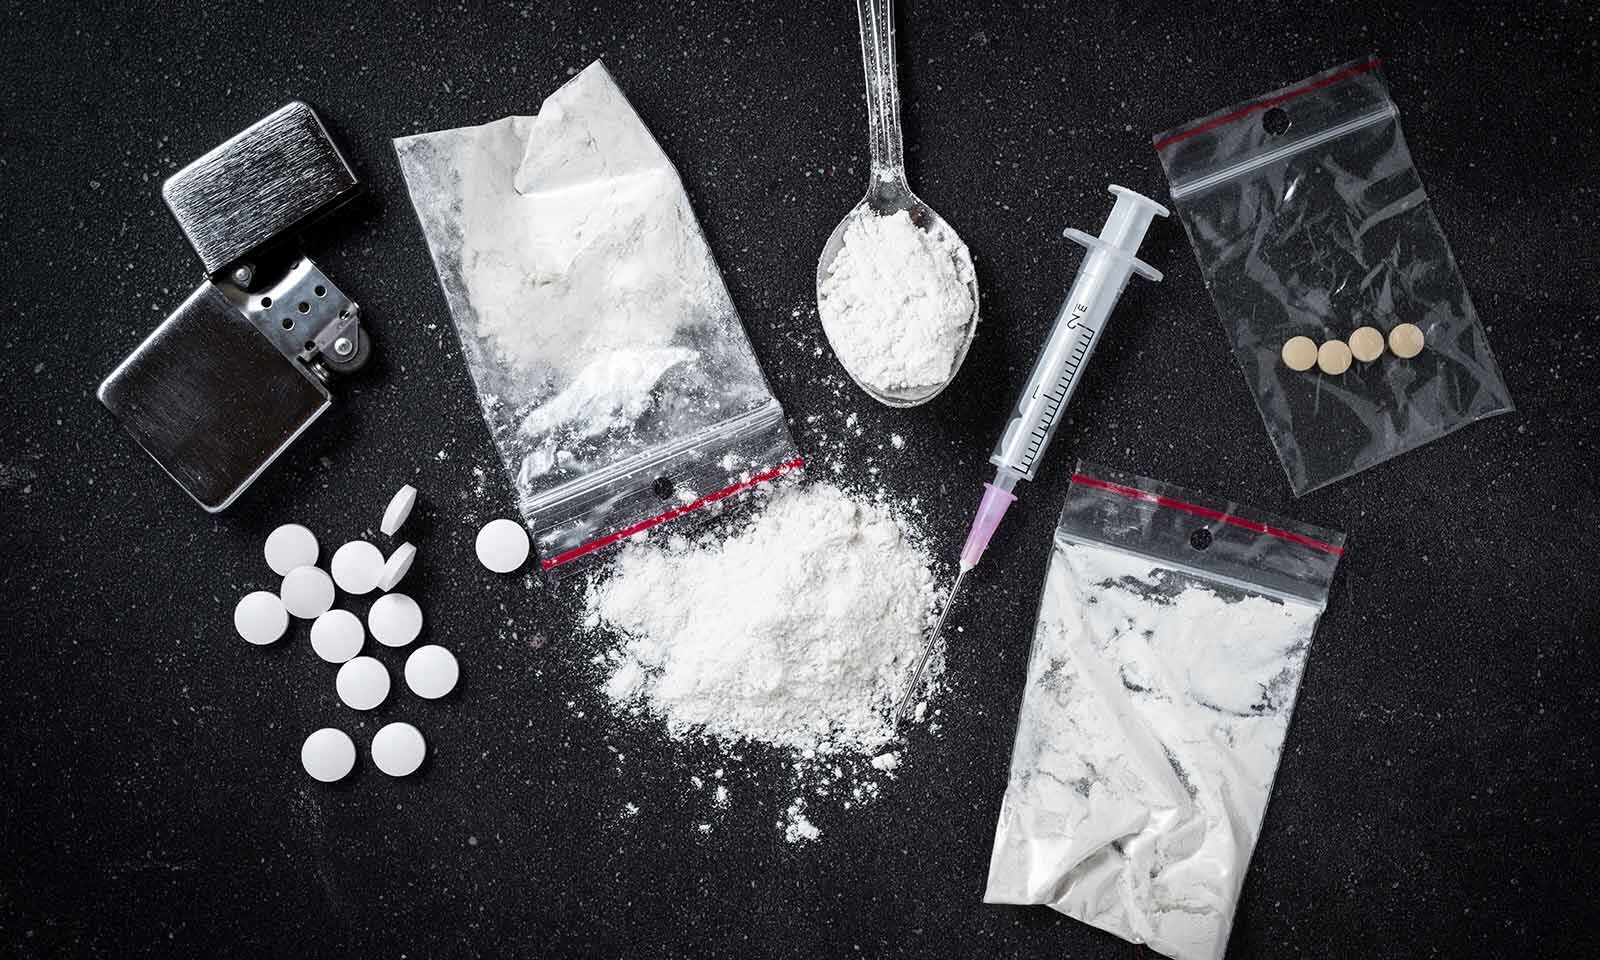 Can Harm Reduction Make Drug Use Safer?